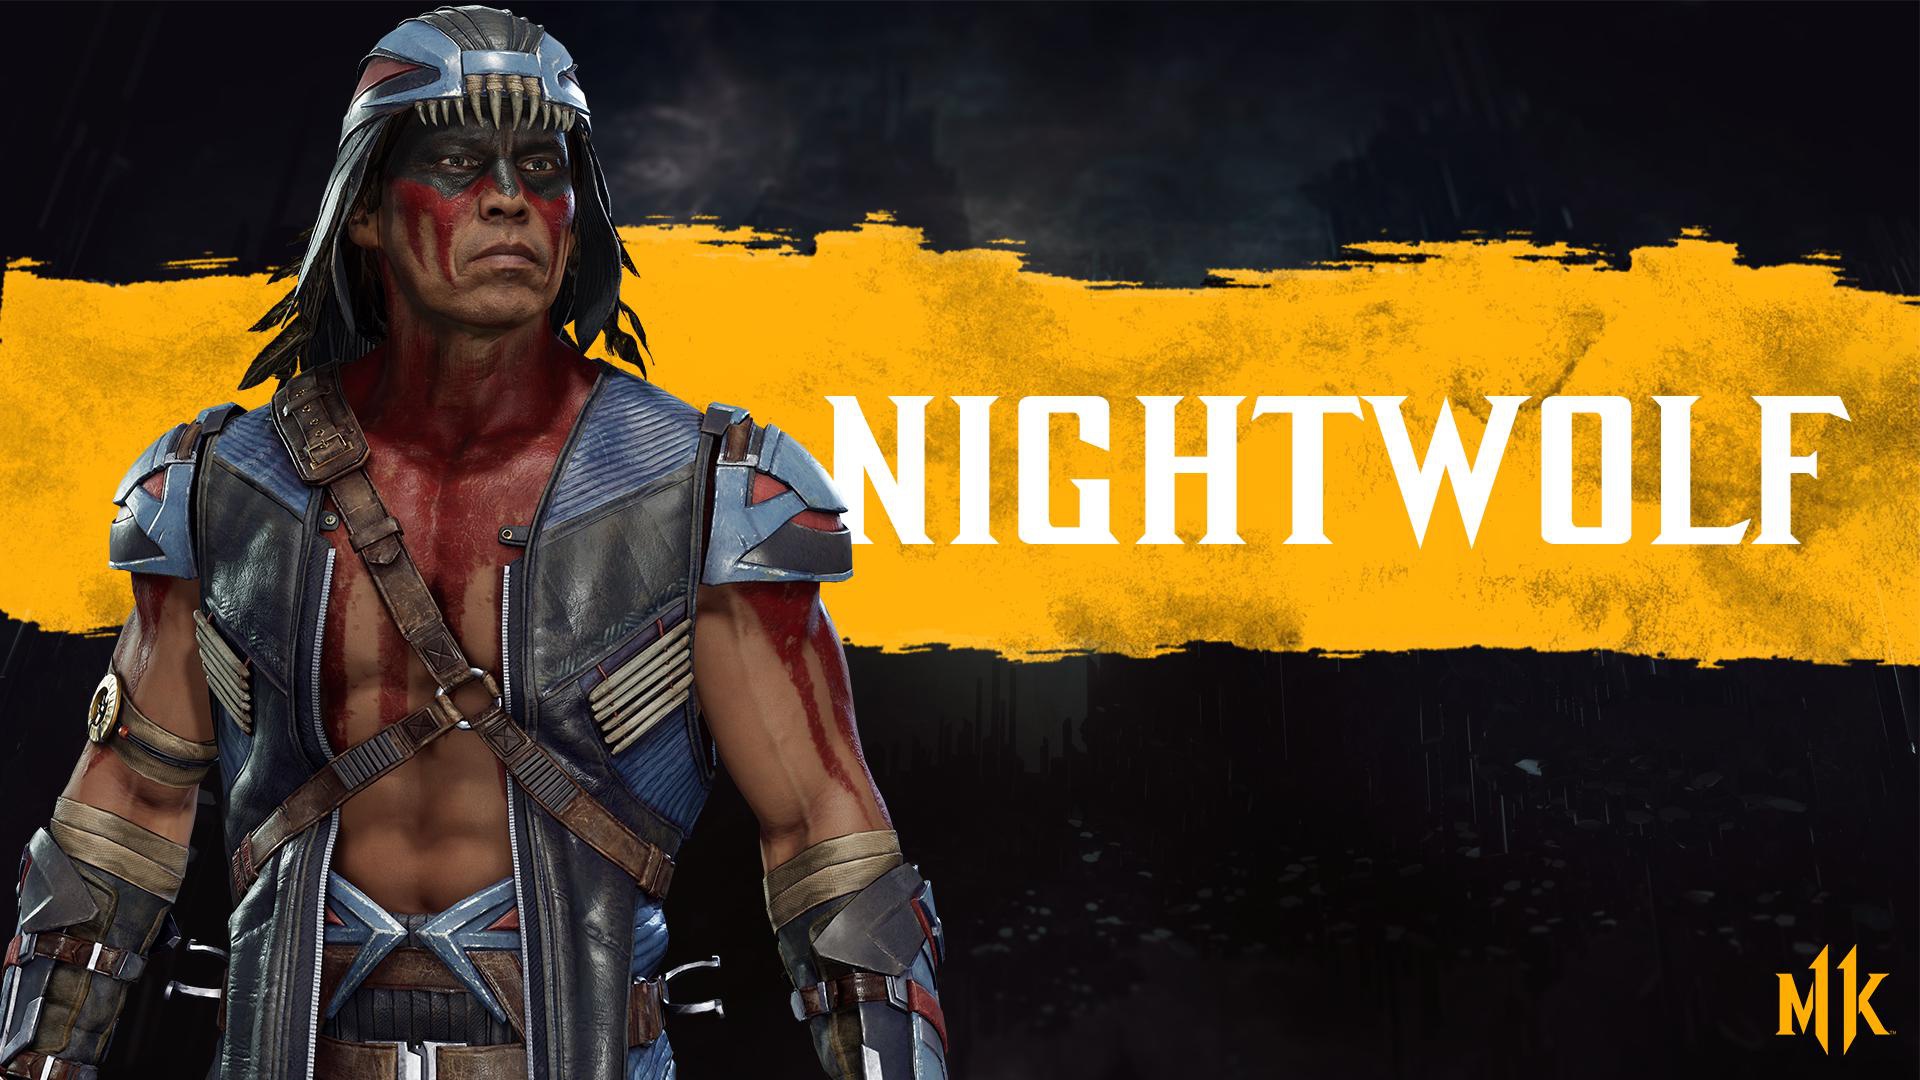 Mortal Kombat Mortal Kombat 11 Nightwolf Mortal Kombat Warrior 1920x1080